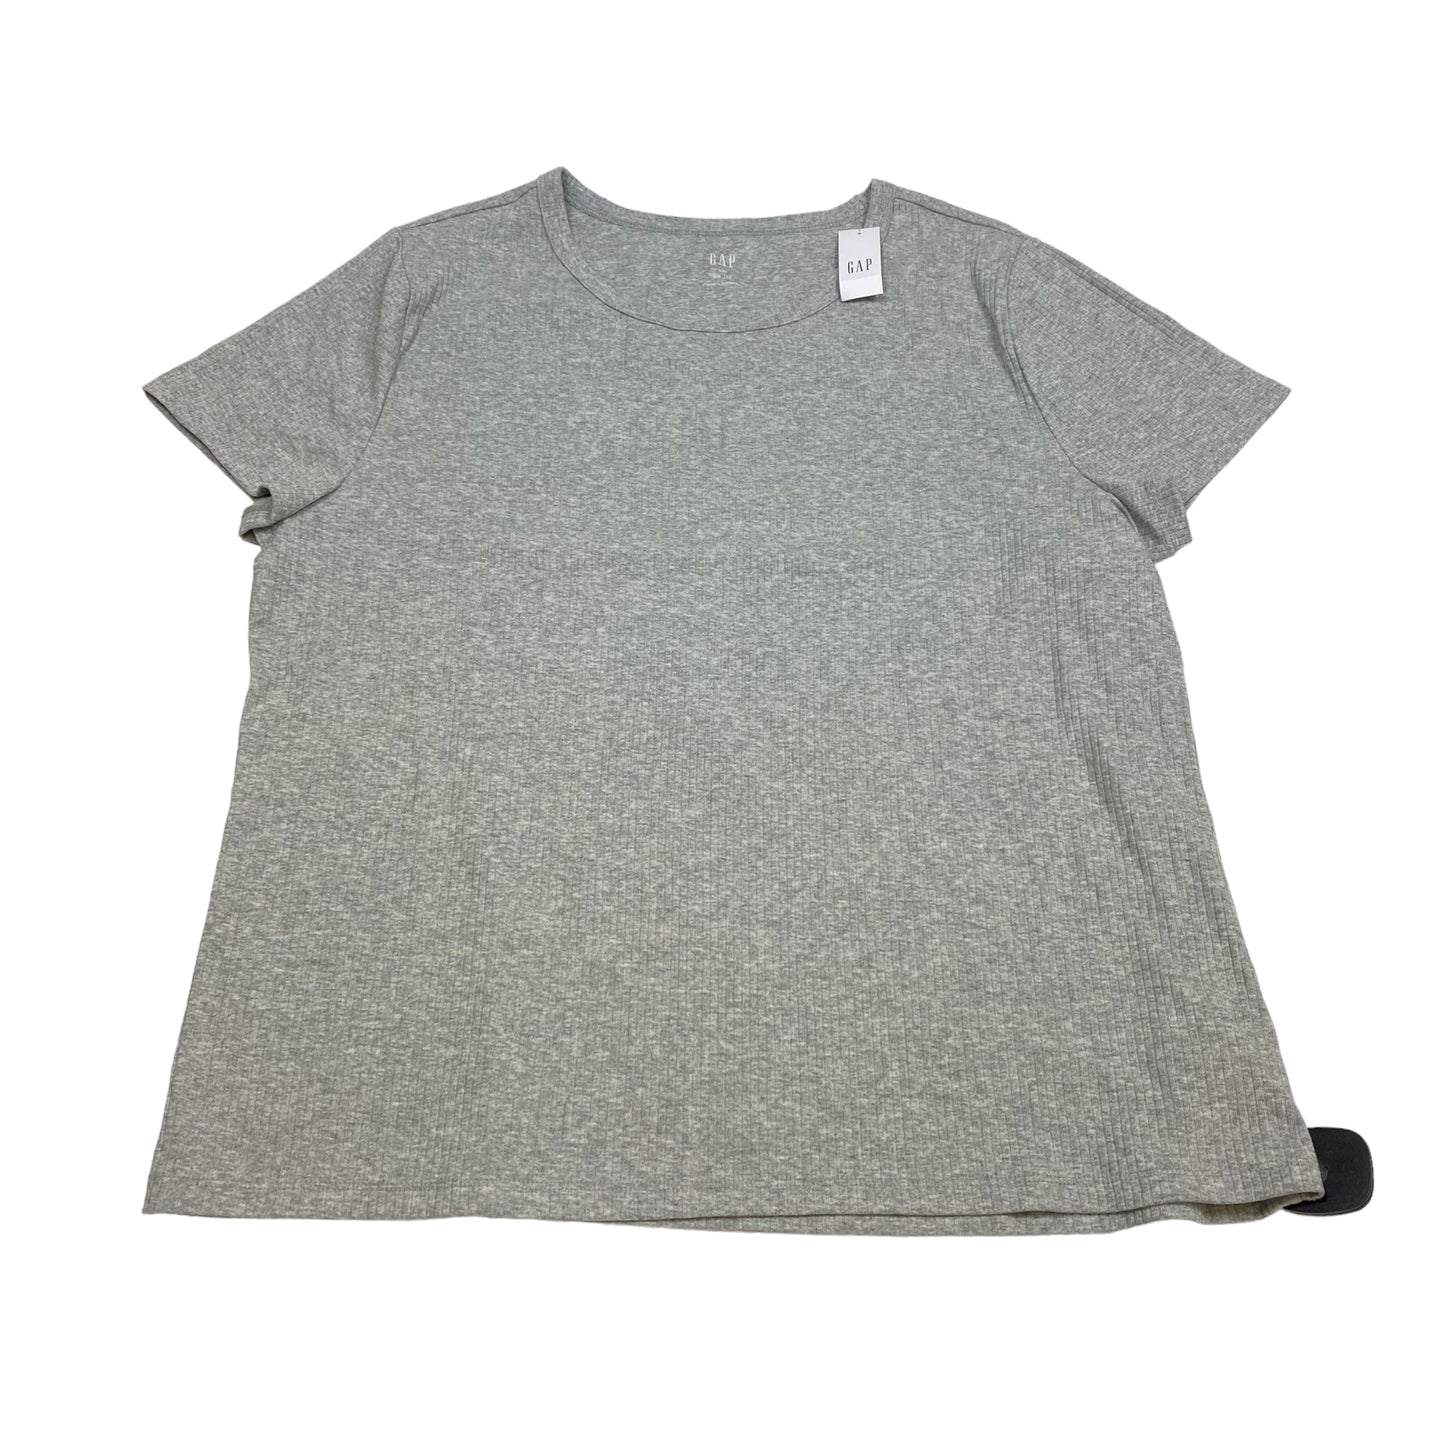 Grey Top Short Sleeve Basic Gap, Size Xxl